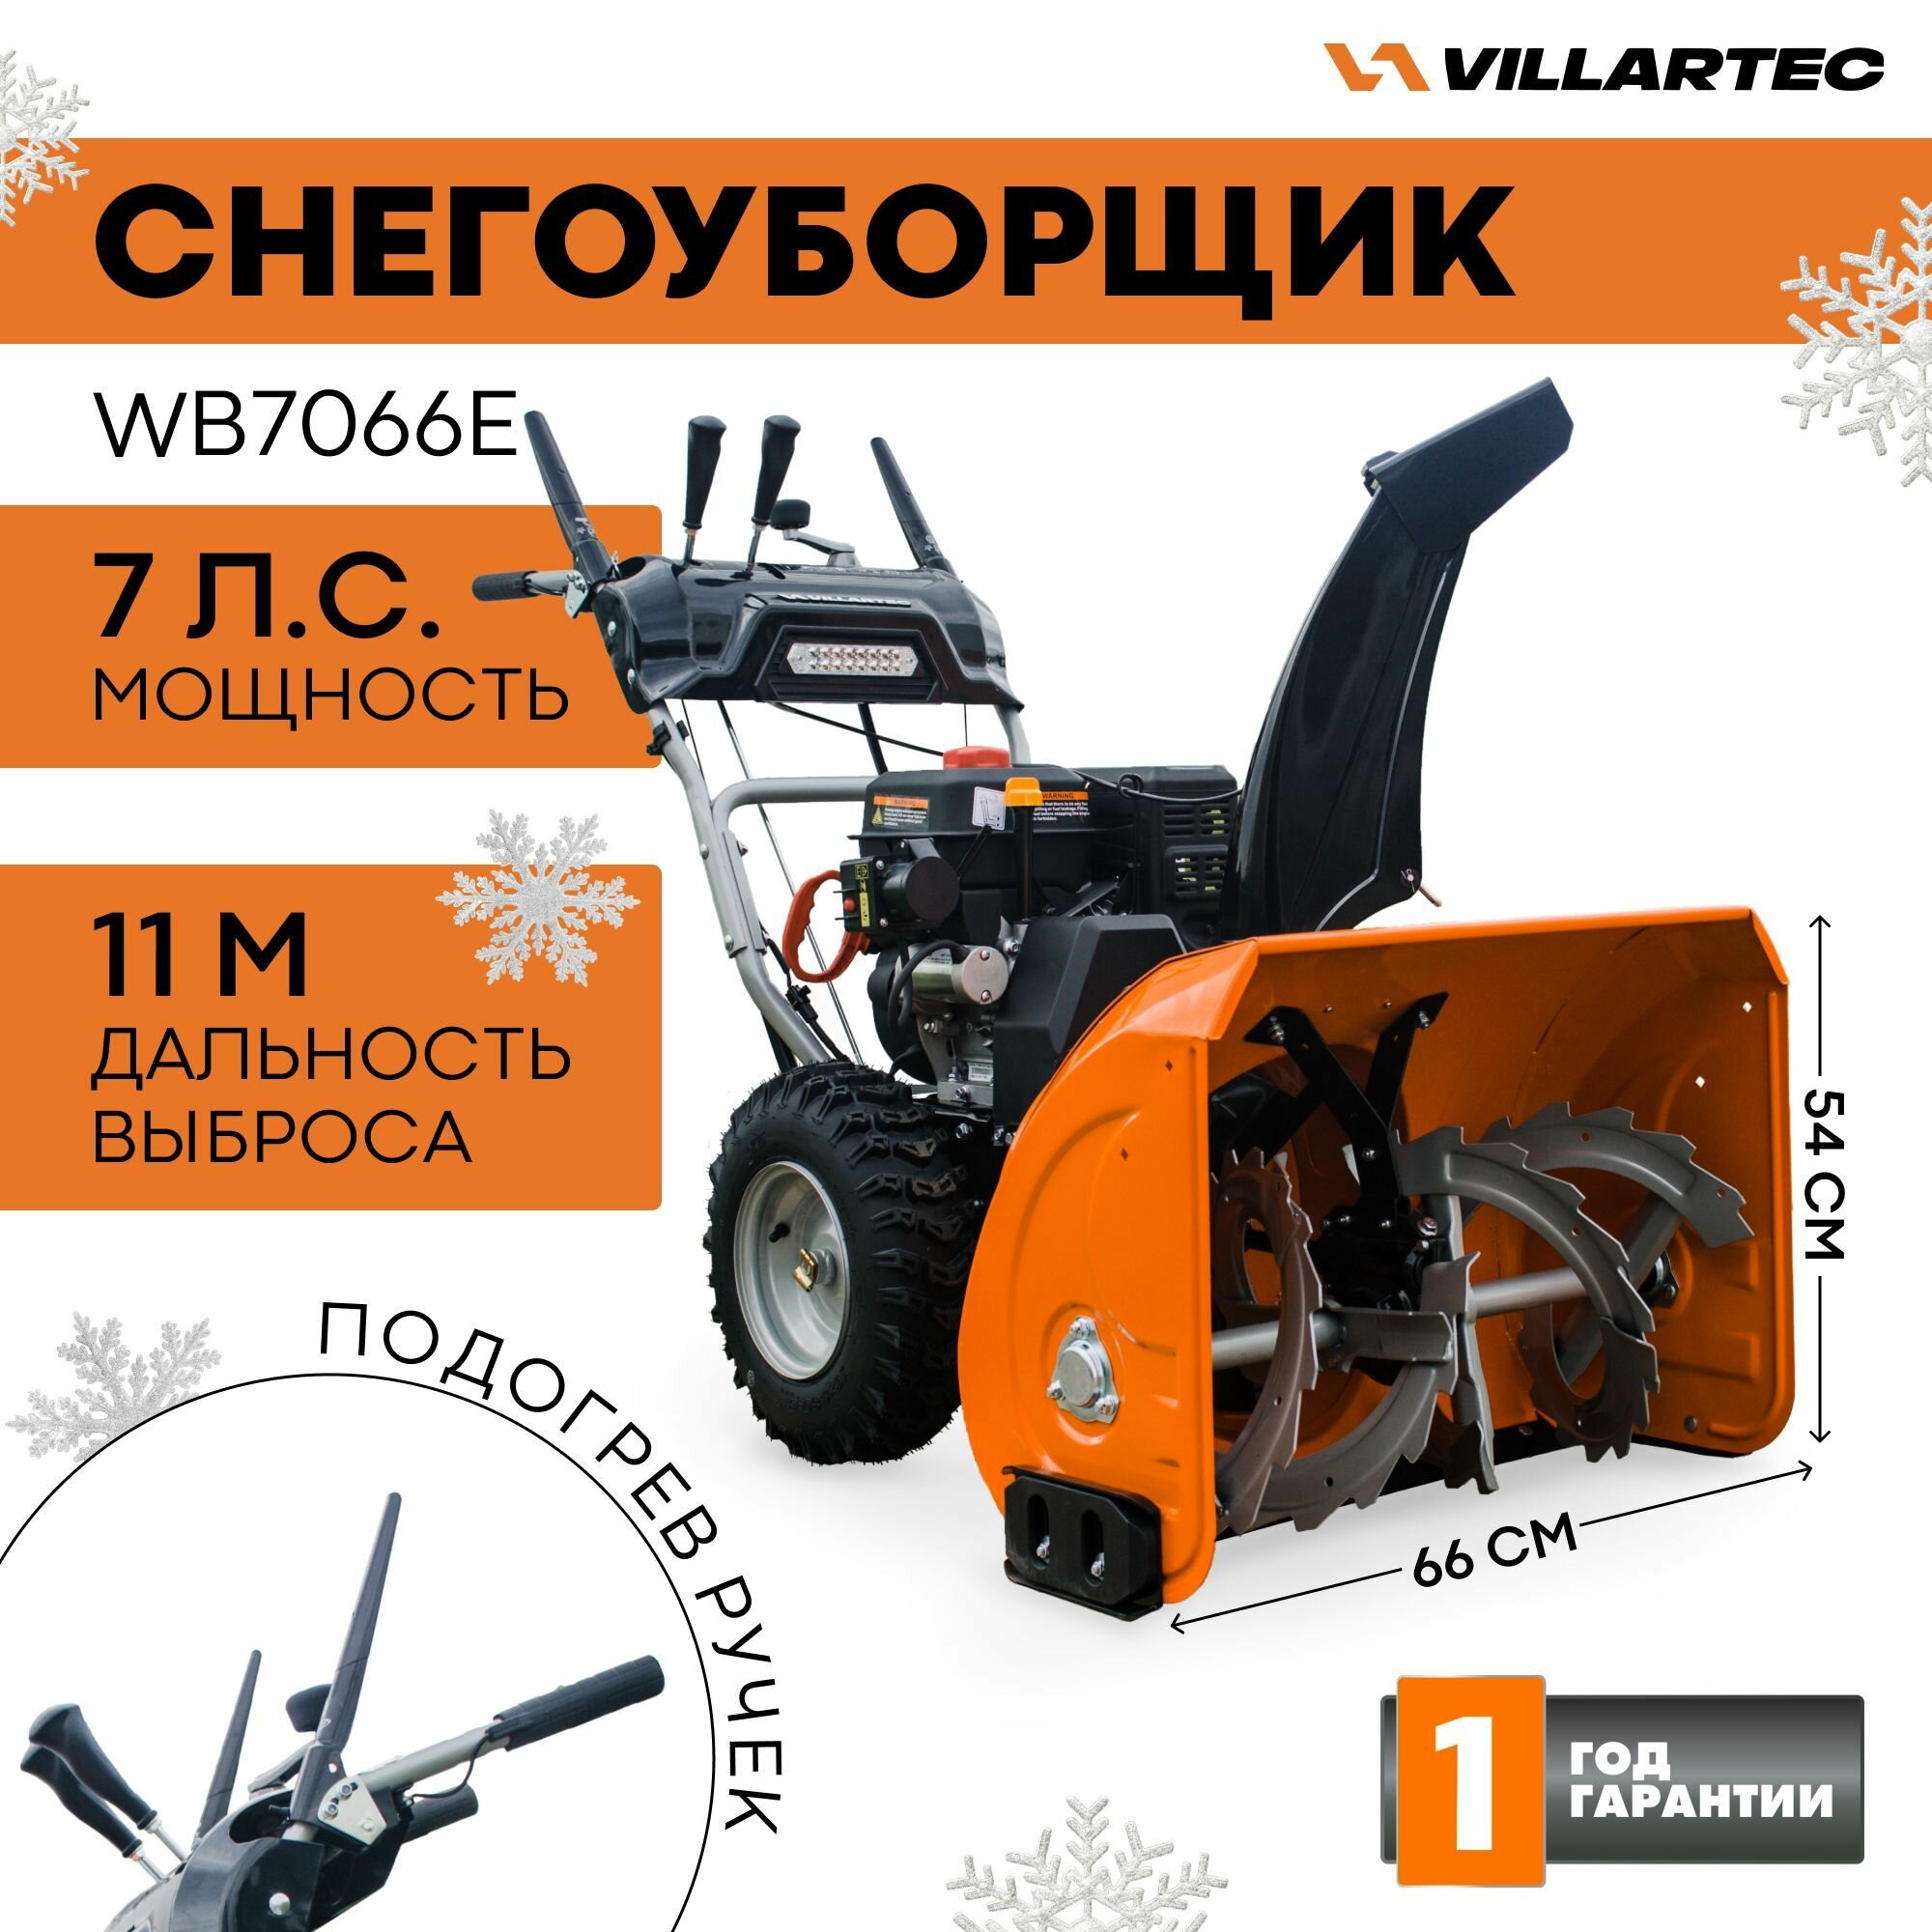 Снегоуборщик бензиновый самоходный VILLARTEC WB7066E / техника для уборки снега снегоуборочная машина